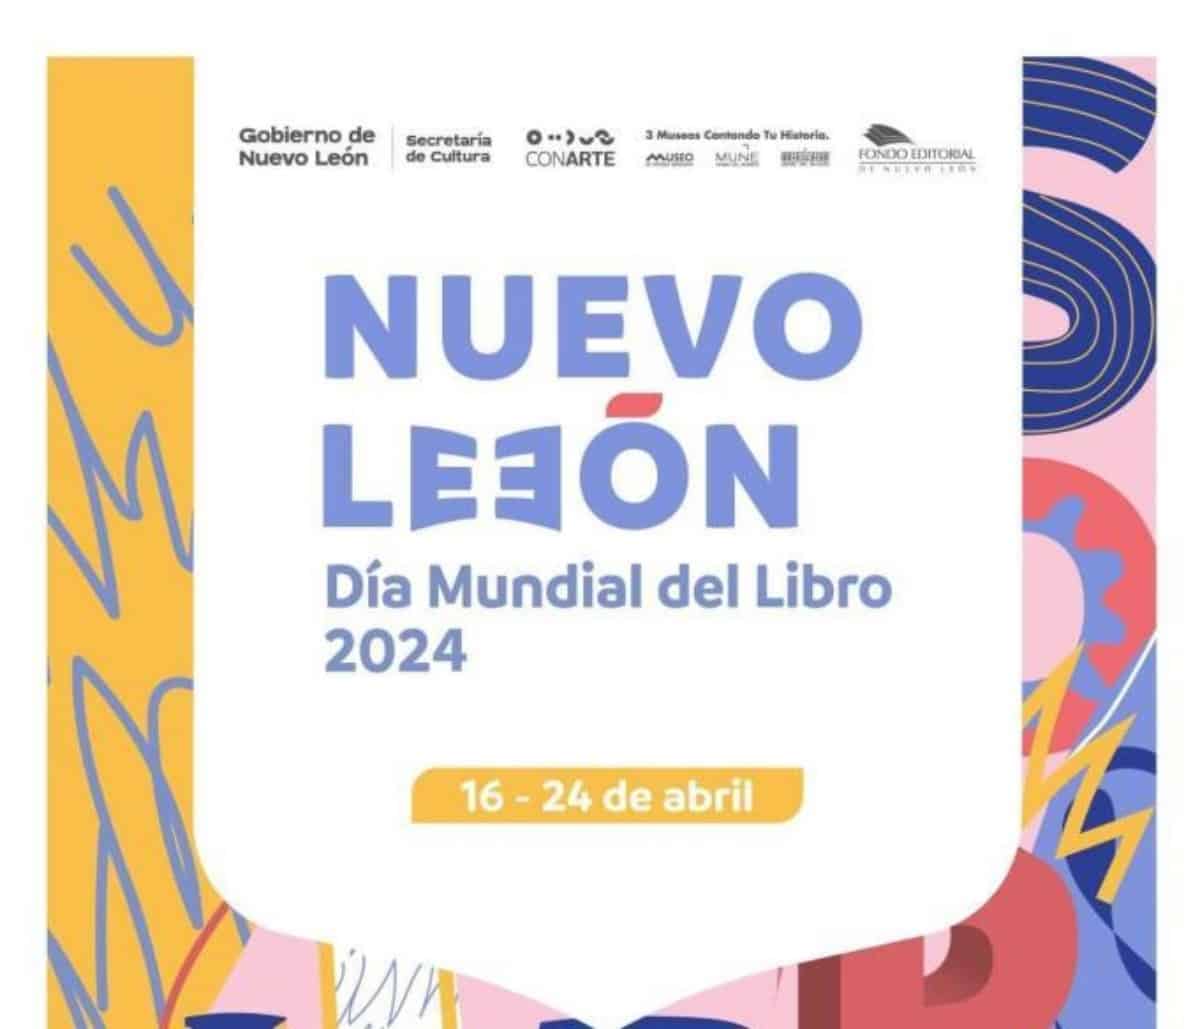 Invitan a celebrar el Día Mundial del Libro en Nuevo León